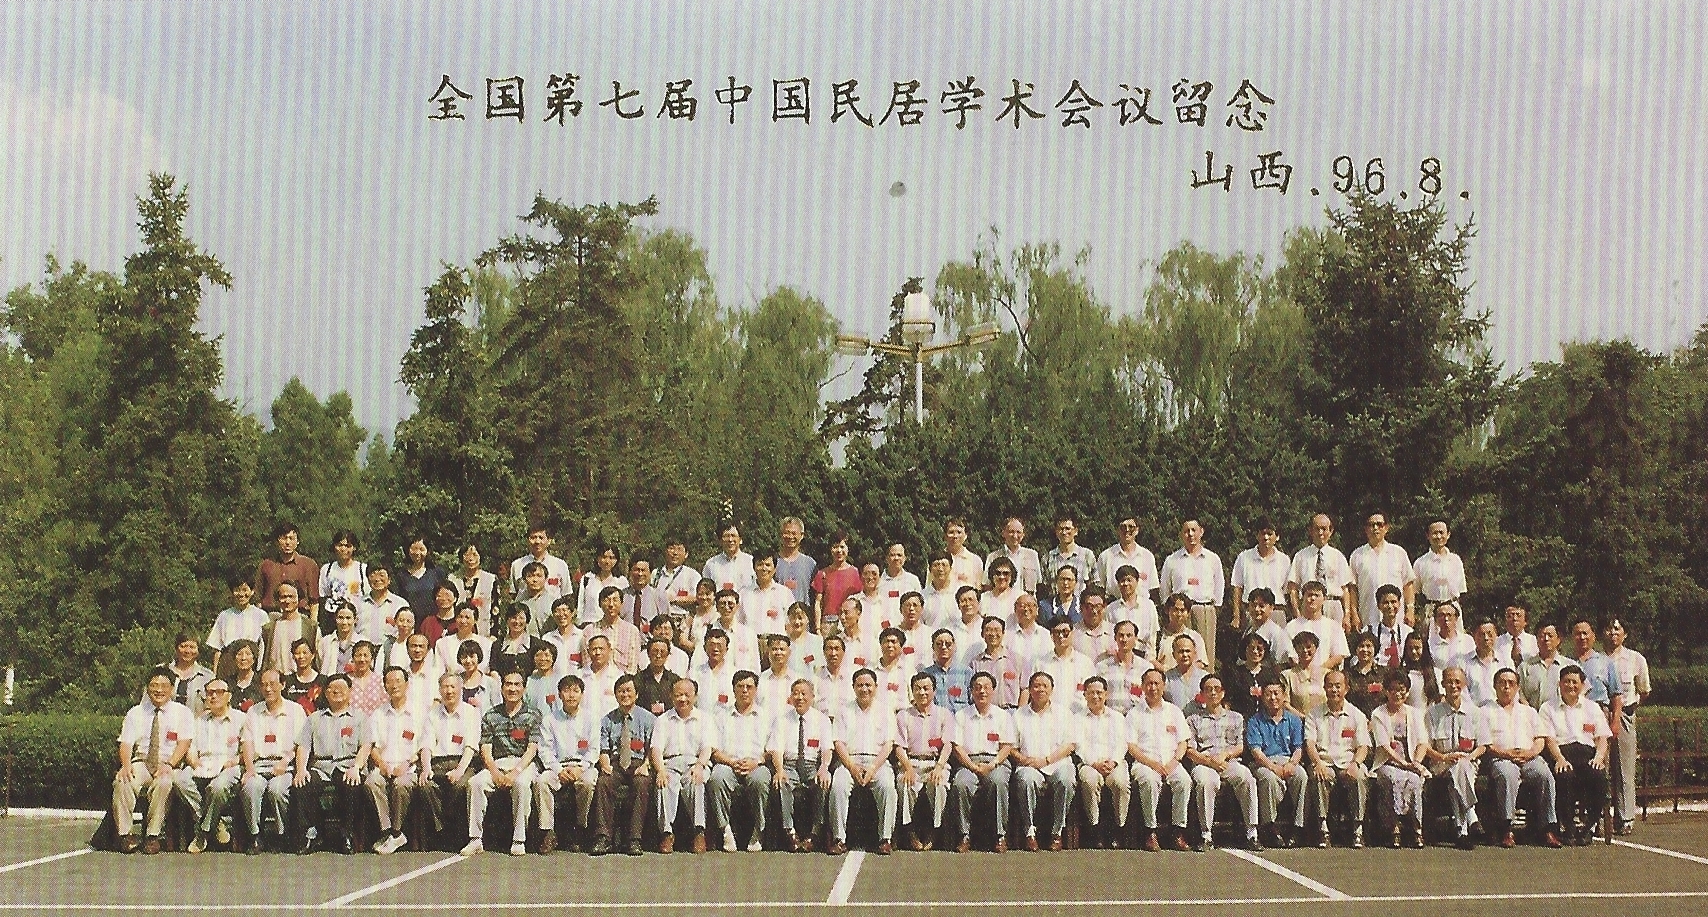 第七届民居学术会议于1998年8月13号—19号在山西太原召开，照片为全体代表合影